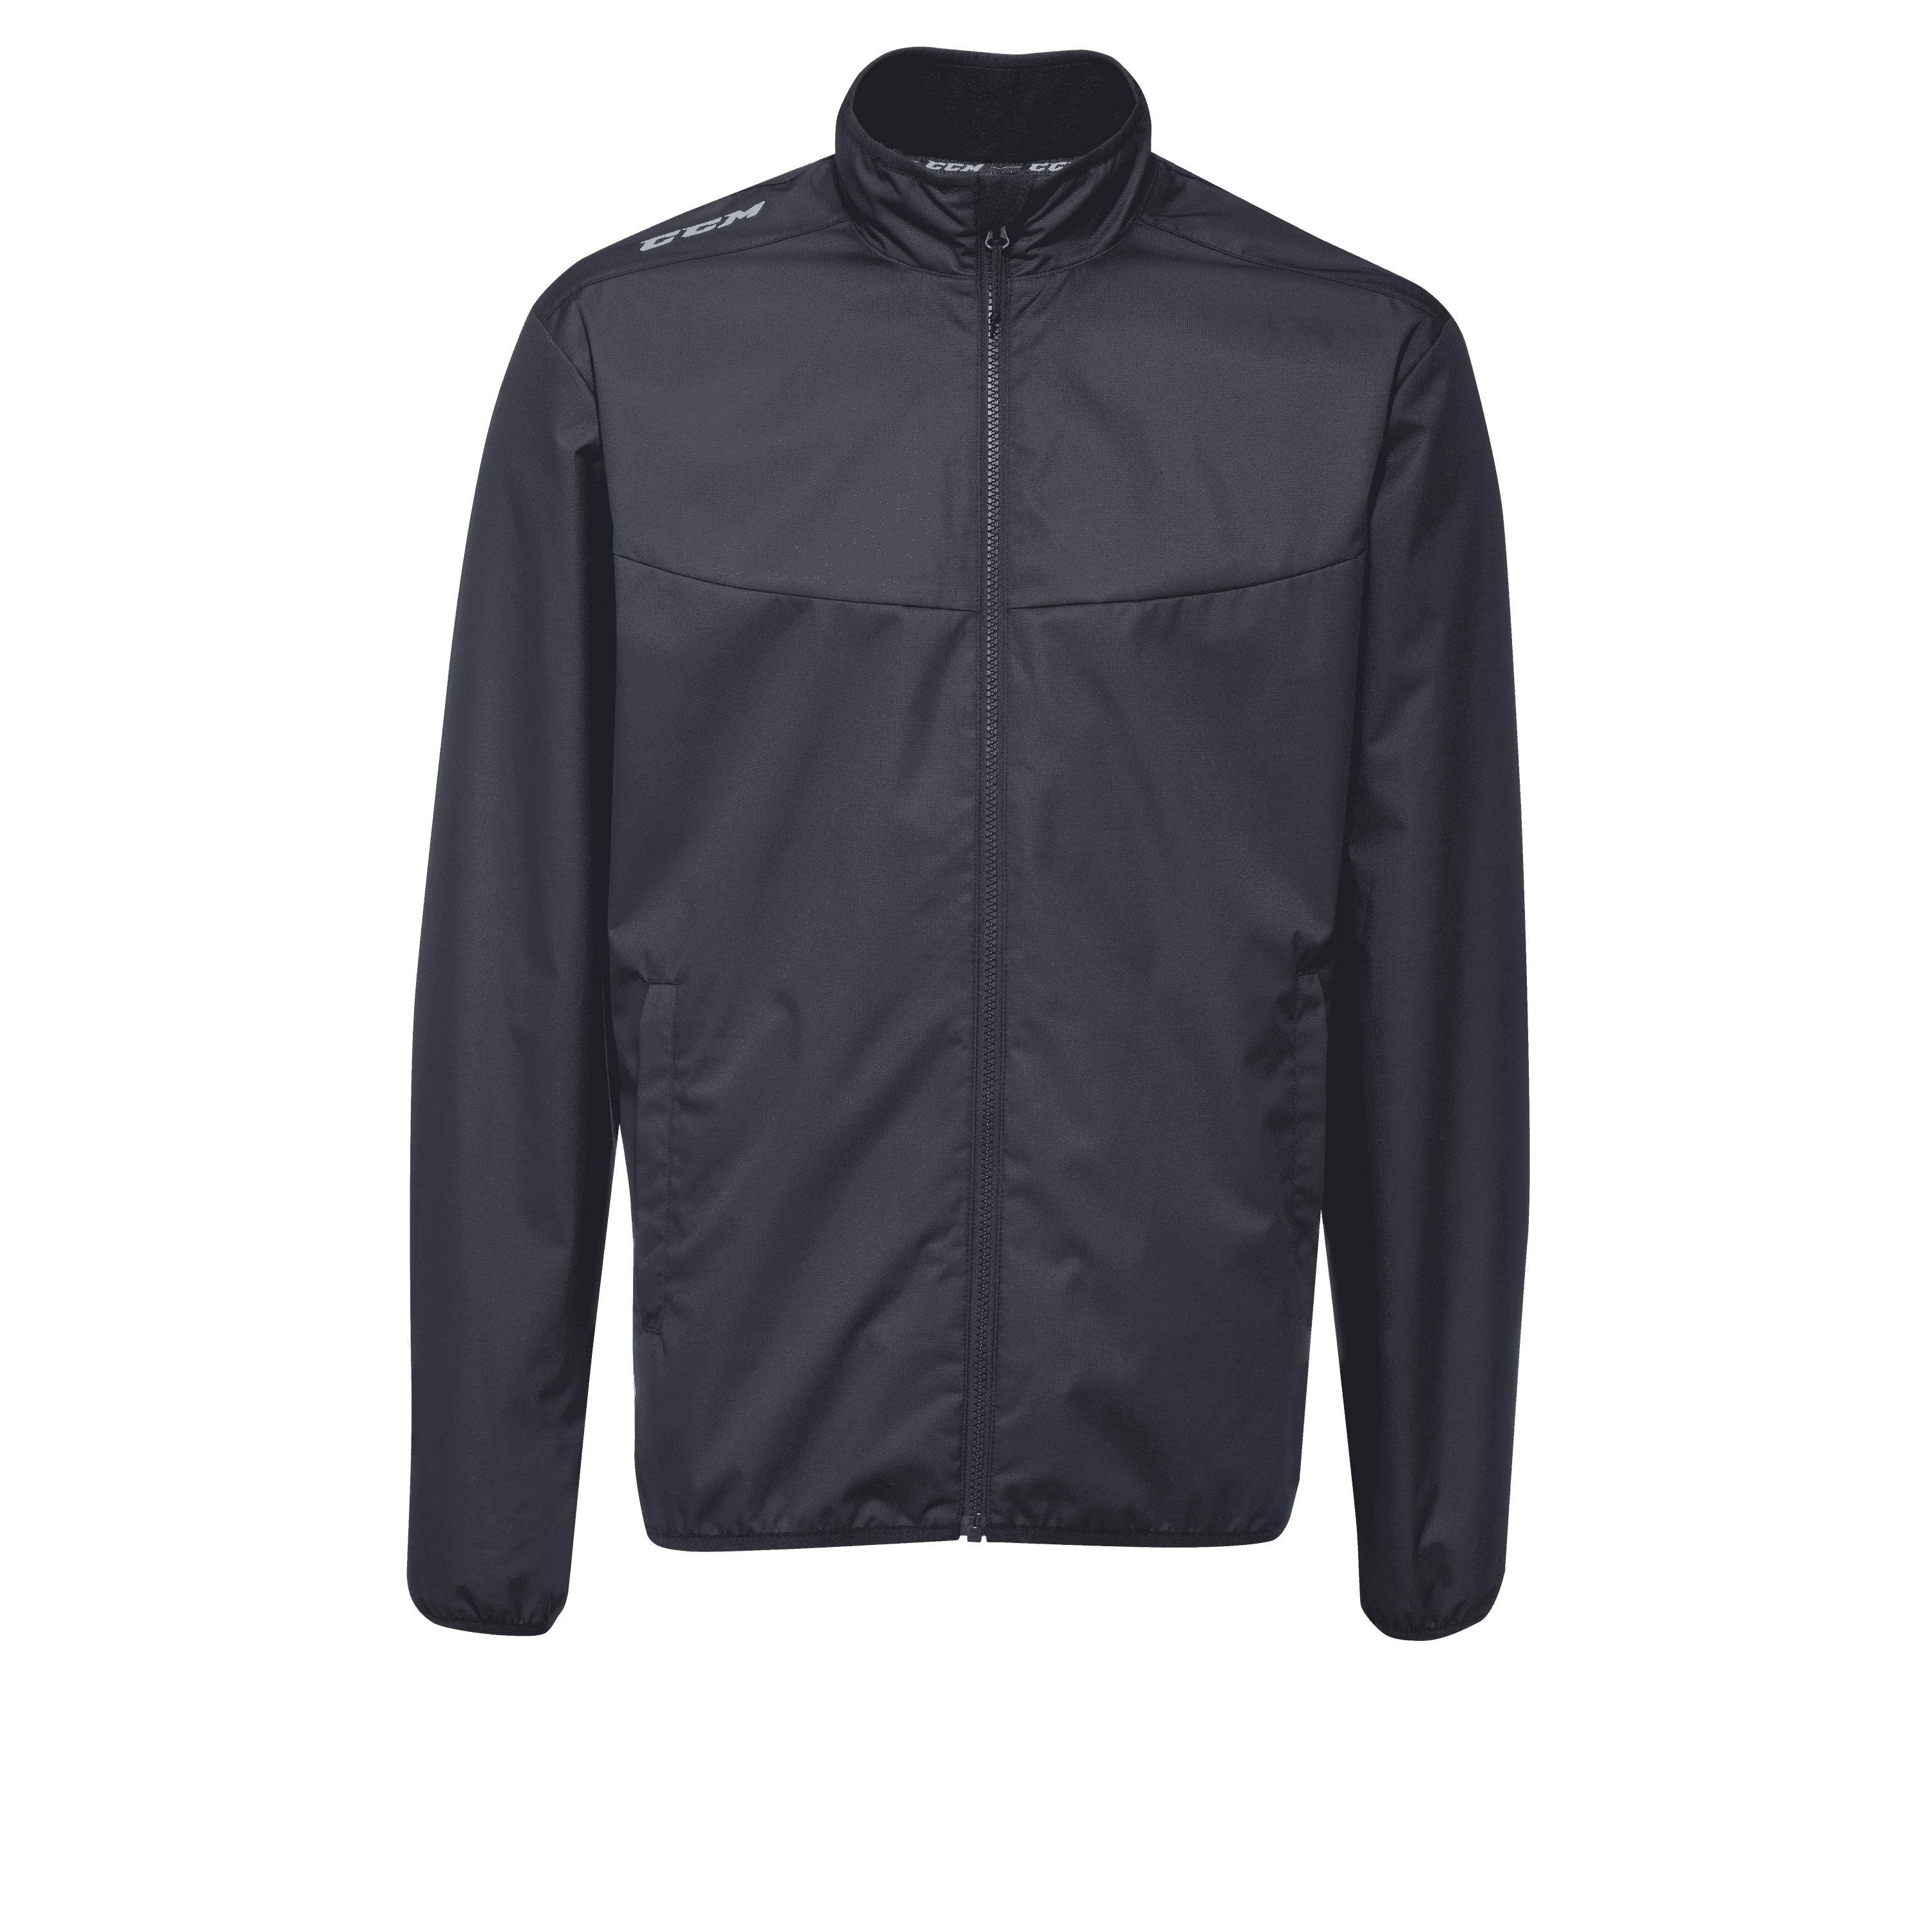 Teamwear CCM HD Suit Jacket 2.0 SR J4786